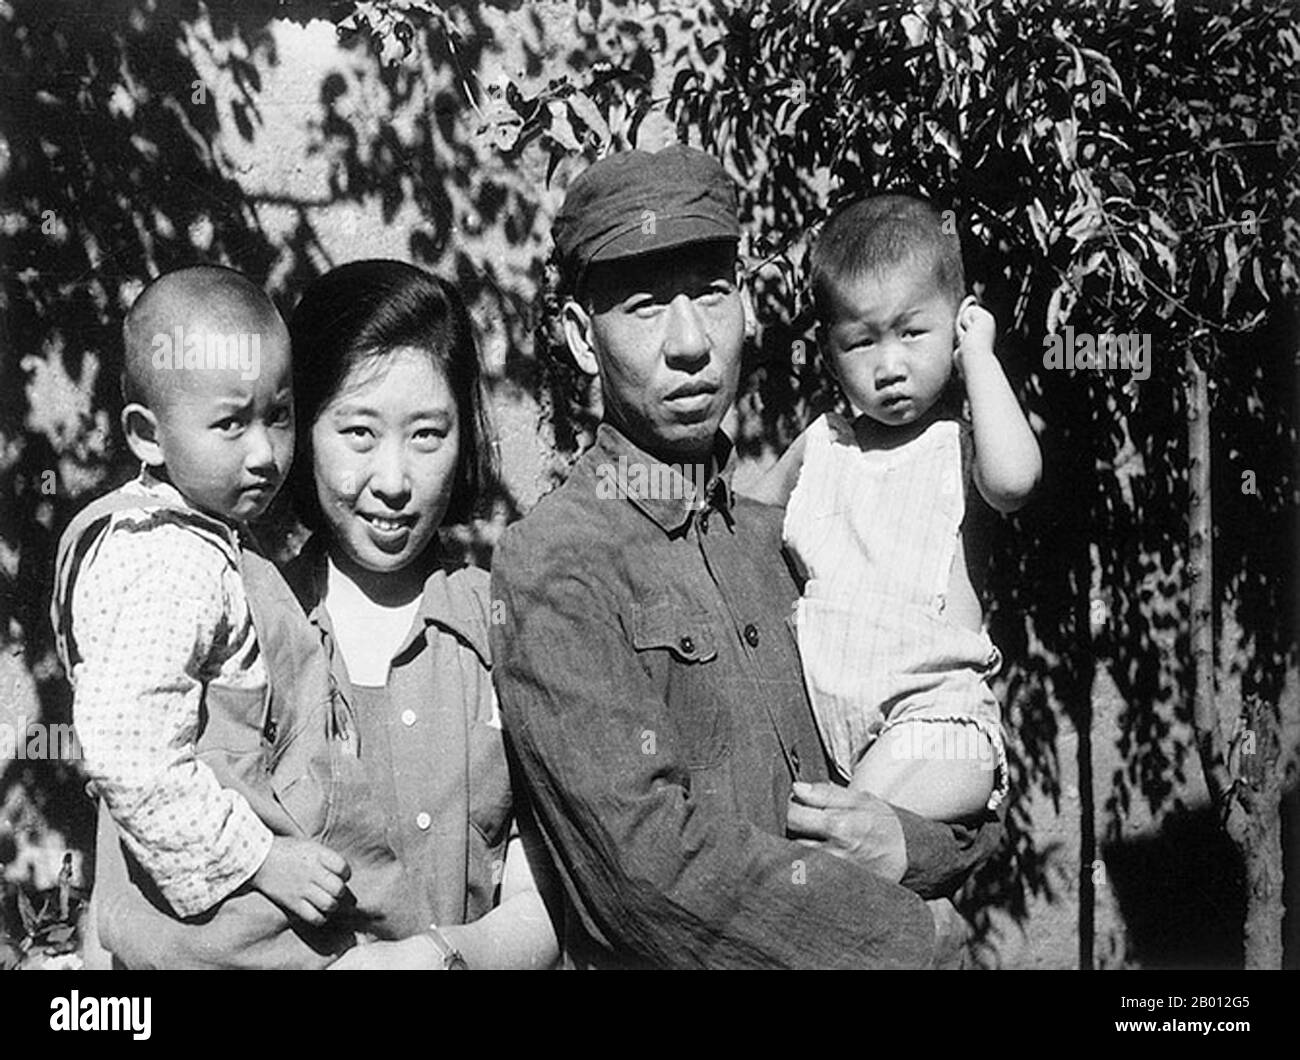 Chine : Liu Shaoqi avec son épouse Wang Guangmei et deux de leurs enfants, années 1940. Liu Shaoqi (Liu Shao-ch'i, 24 novembre 1898 – 12 novembre 1969) était un révolutionnaire, un homme d'État et un théoricien chinois. Il a été Président de la République populaire de Chine, chef d'État chinois, du 27 avril 1959 au 31 octobre 1968, au cours de laquelle il a mis en œuvre des politiques de reconstruction économique en Chine. Il est tombé en déroute vers la fin des années 1960 pendant la Révolution culturelle à cause de ses points de vue « de droite » et, on le théorise, parce que Mao considérait Liu comme une menace pour son pouvoir. Banque D'Images